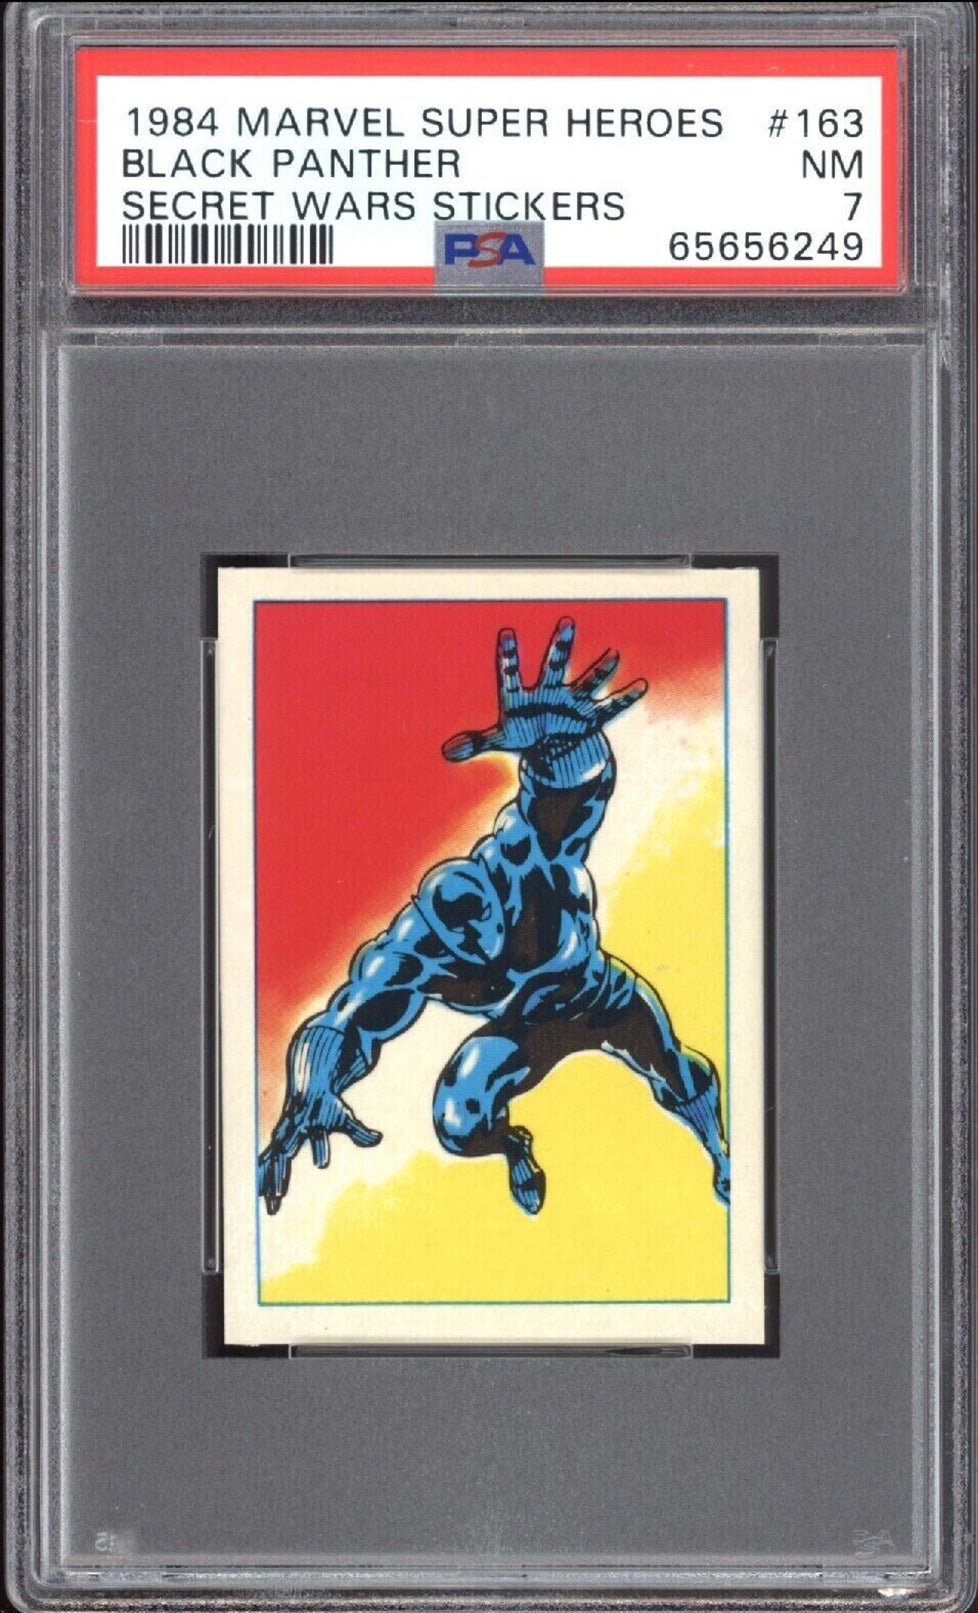 BLACK PANTHER PSA 7 1984 Marvel Super Heroes Secret Wars Sticker #163 Marvel Graded Cards Sticker - Hobby Gems